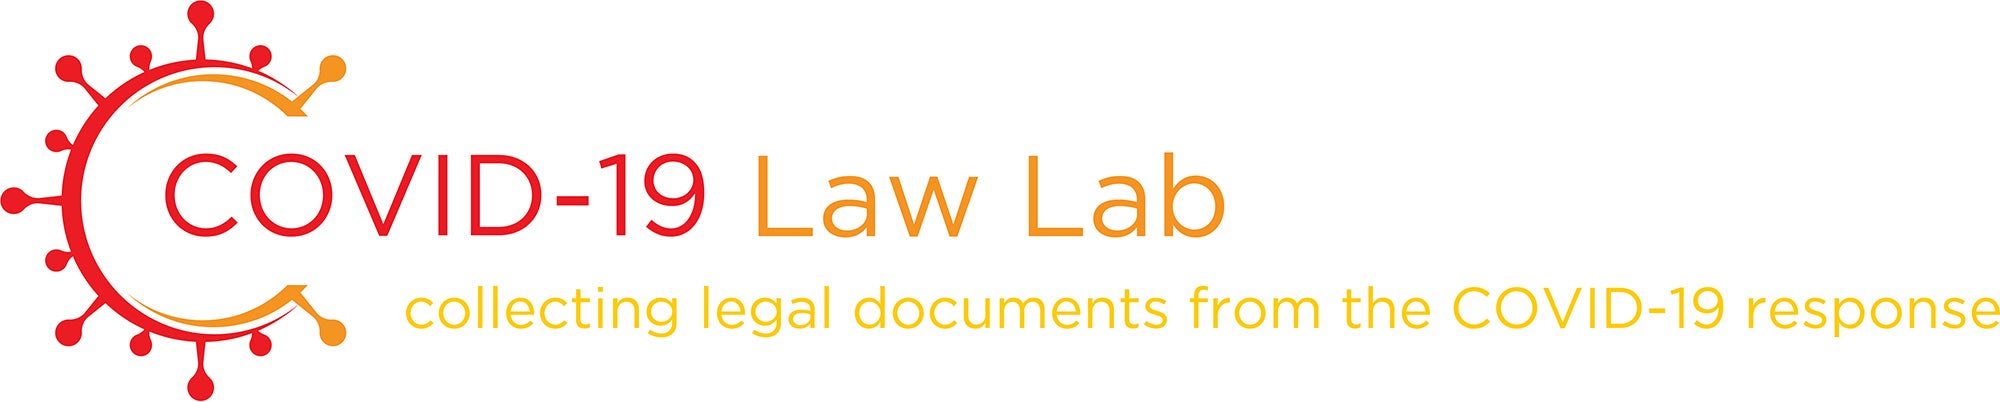 COVID-19 Law Lab